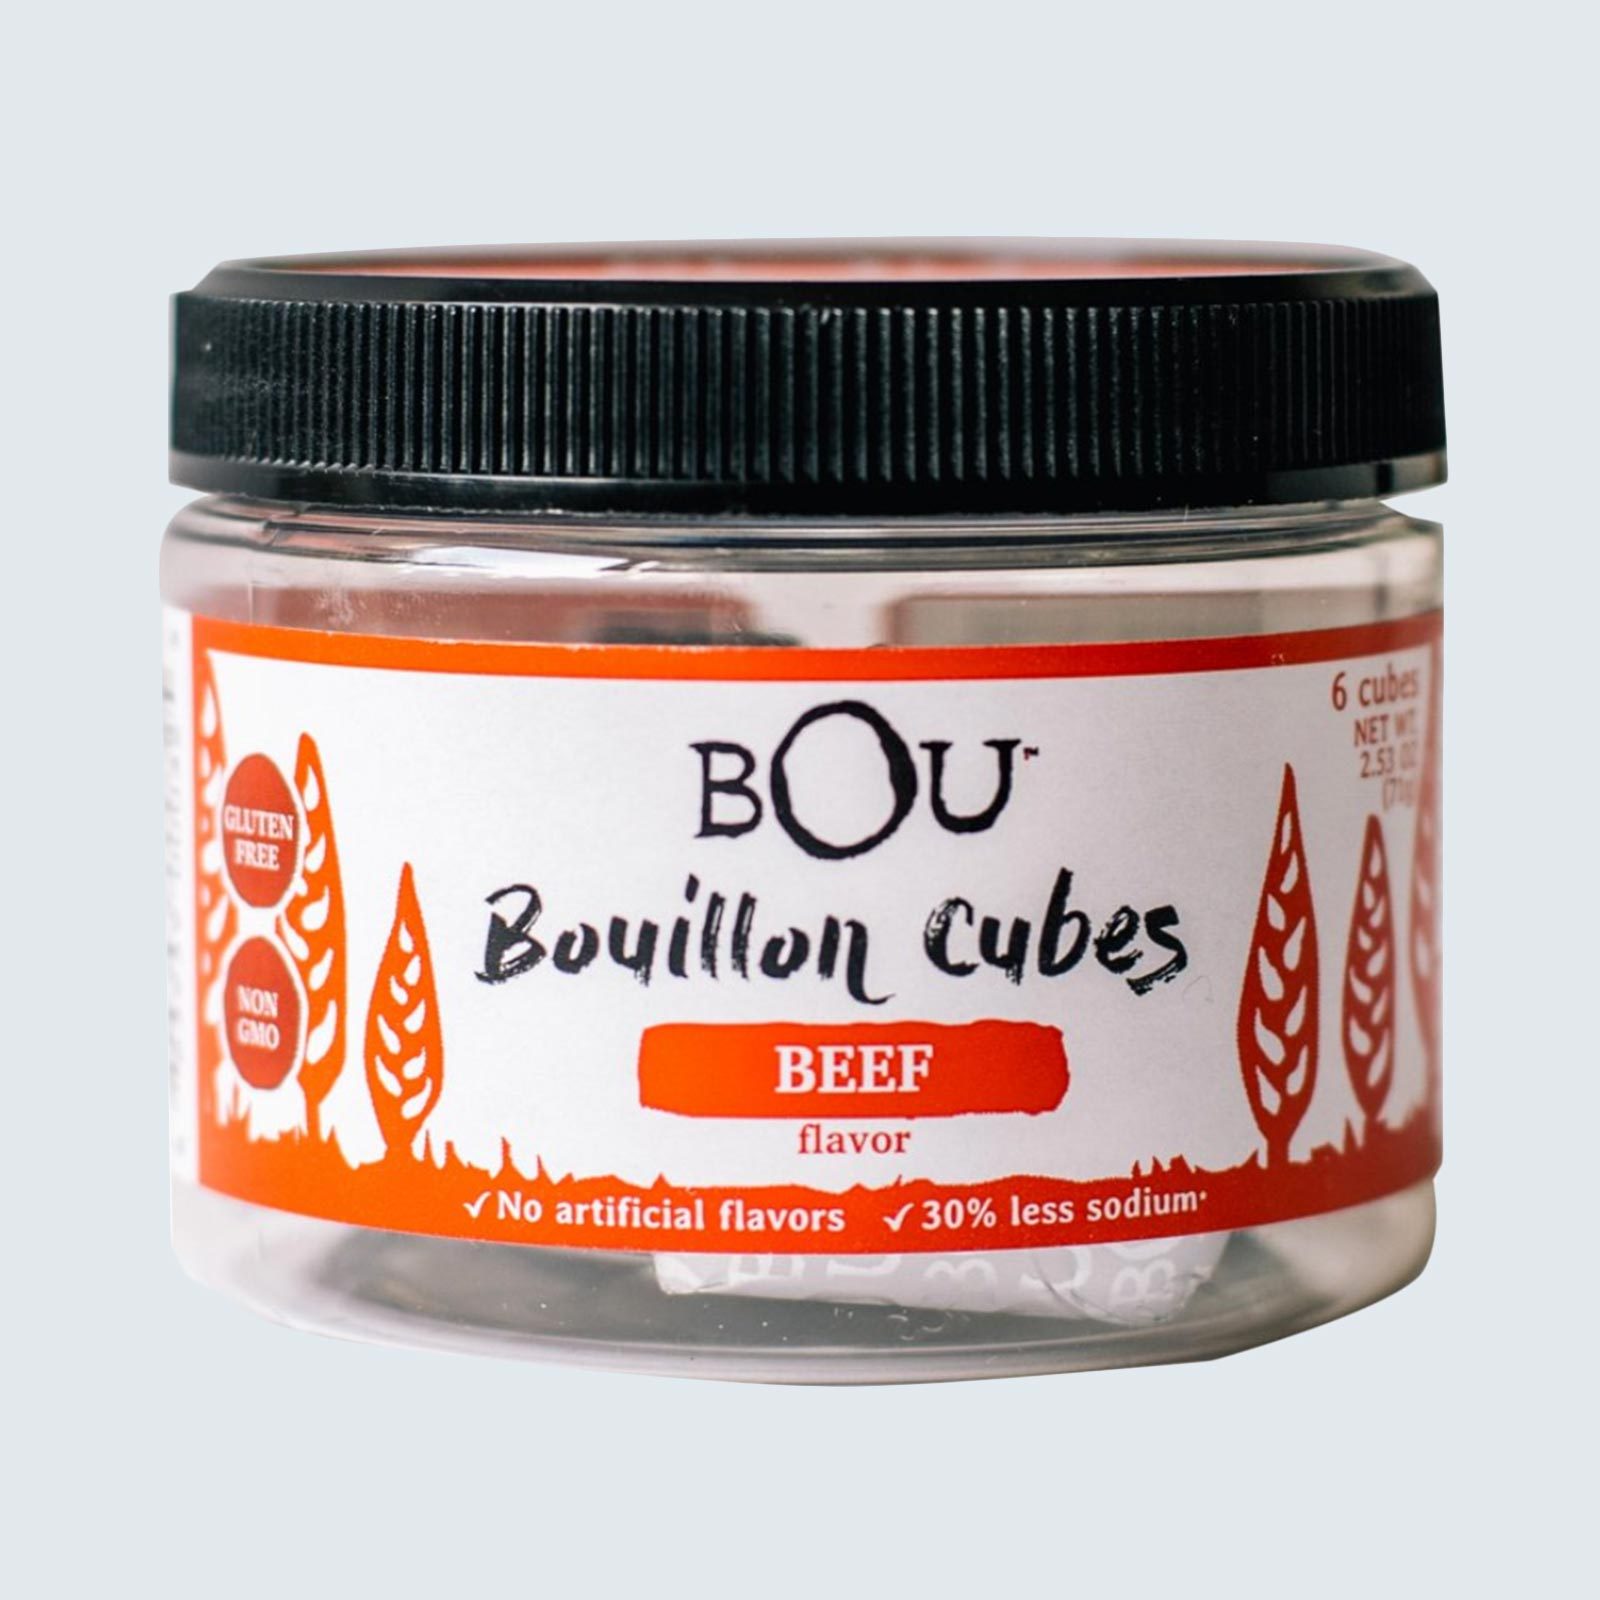 Bou Beef Bouillon Cubes